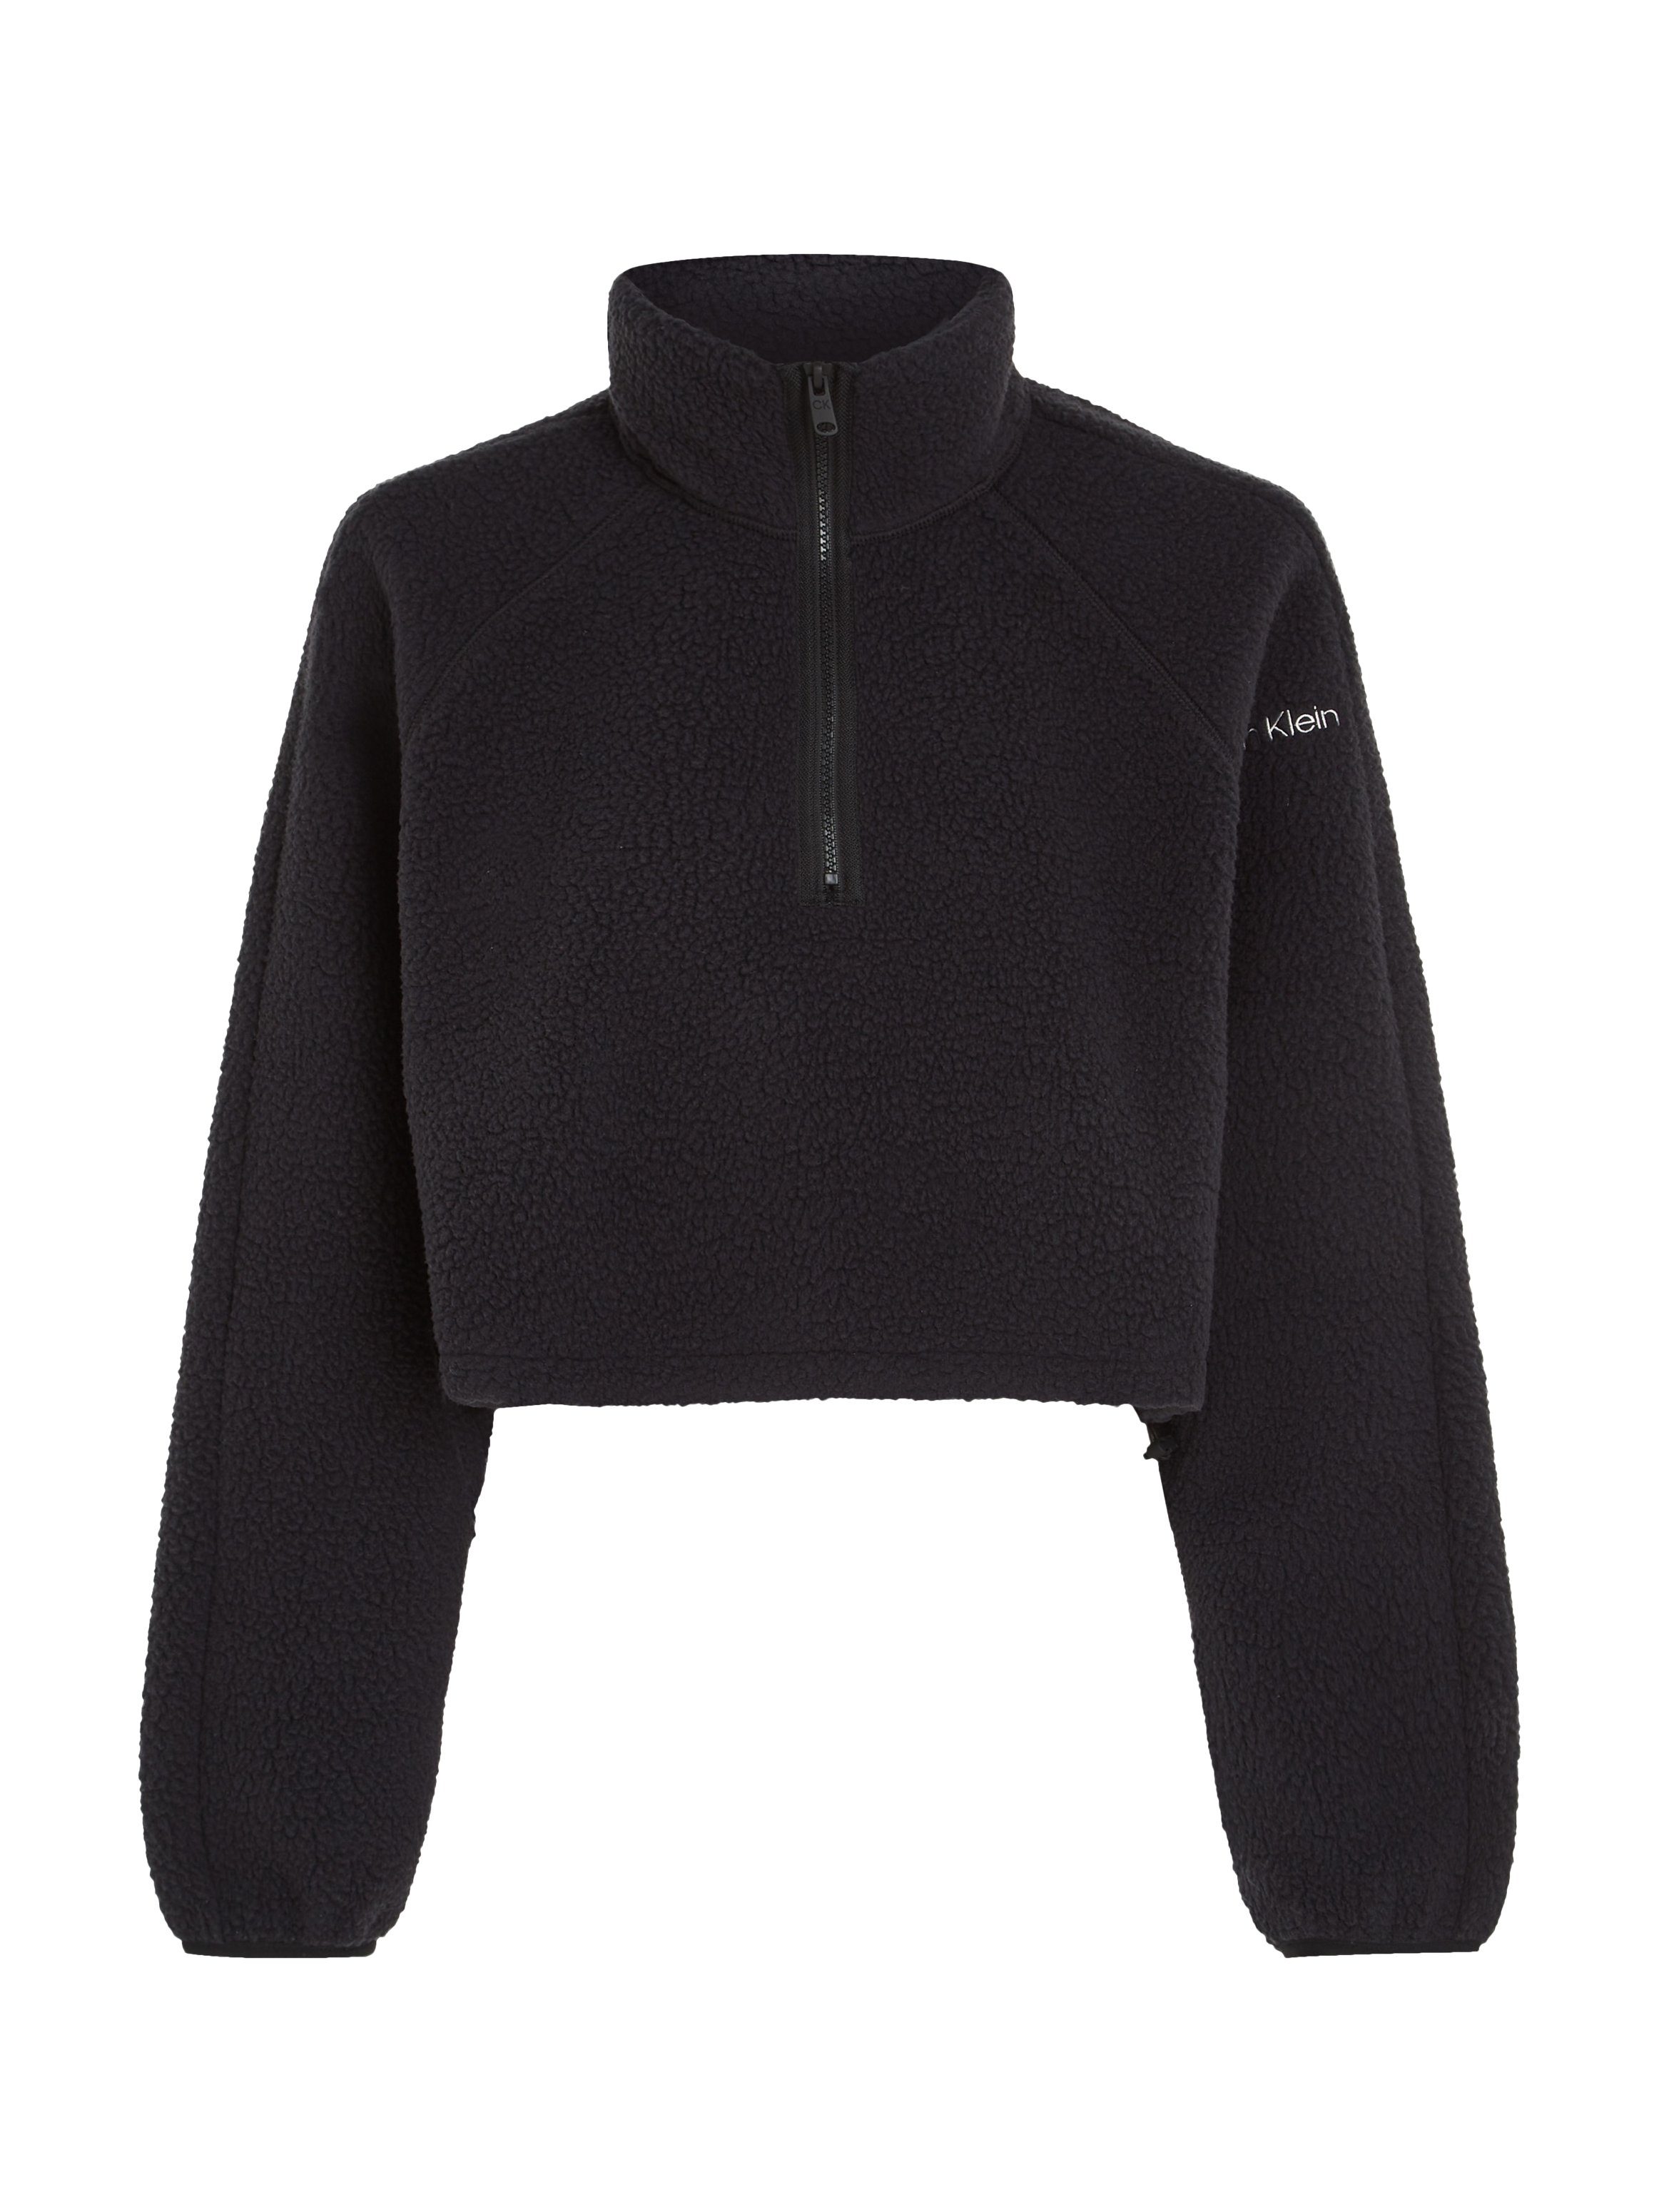 Klein HYBRID Calvin schwarz Sport Sherpa - Stehkragenpullover Pullover